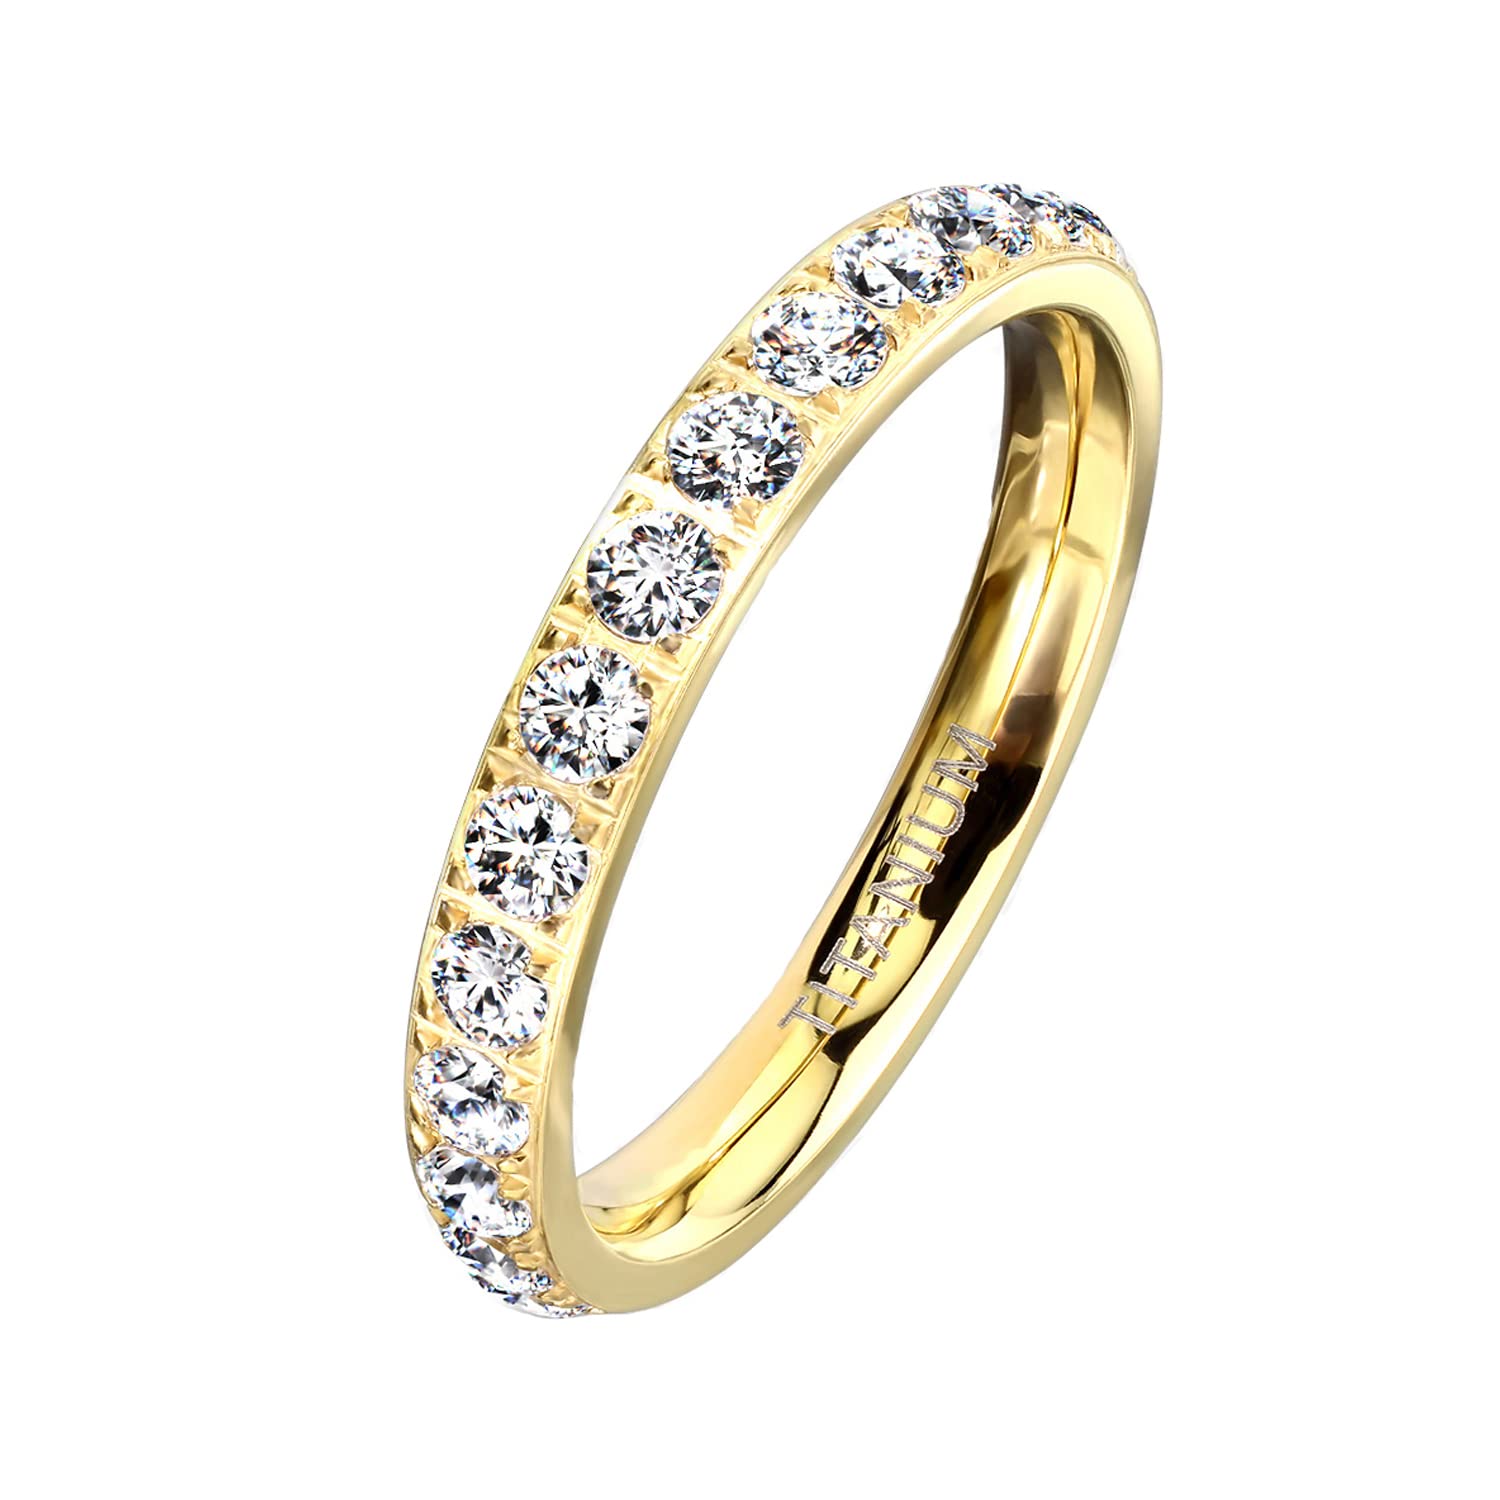 Mianova Damen Ring Titan mit vielen Glitzer Kristallen Steinen Damenring Memory Band Bandring Ewigkeitsring Trauring Verlobungsring Fingerring Gold Größe 57 (18.1)